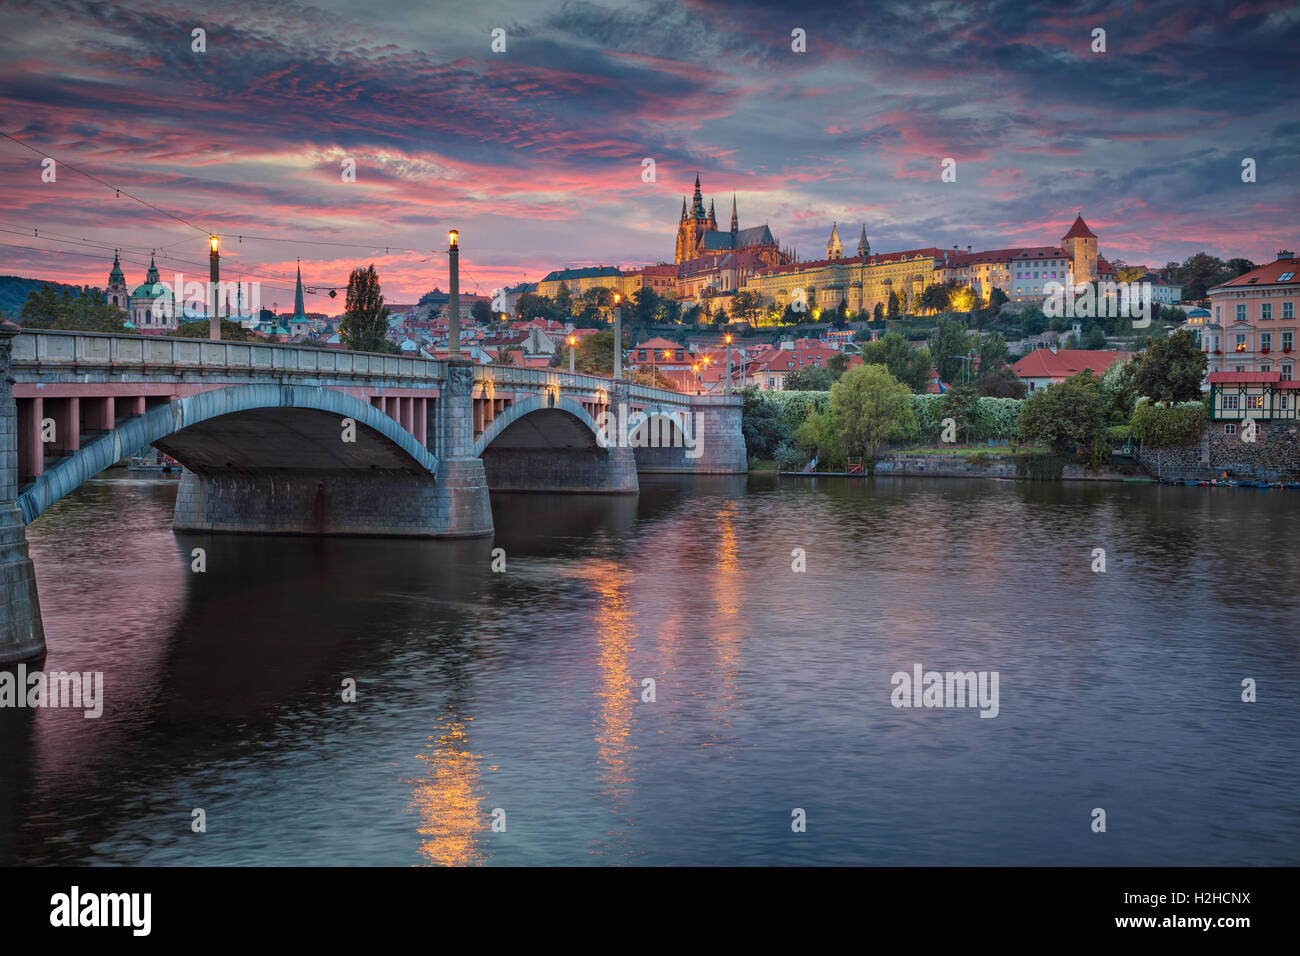 Praga al atardecer. Imagen de Praga, capital de la República Checa y el Puente Charles, durante la puesta de sol. Foto de stock